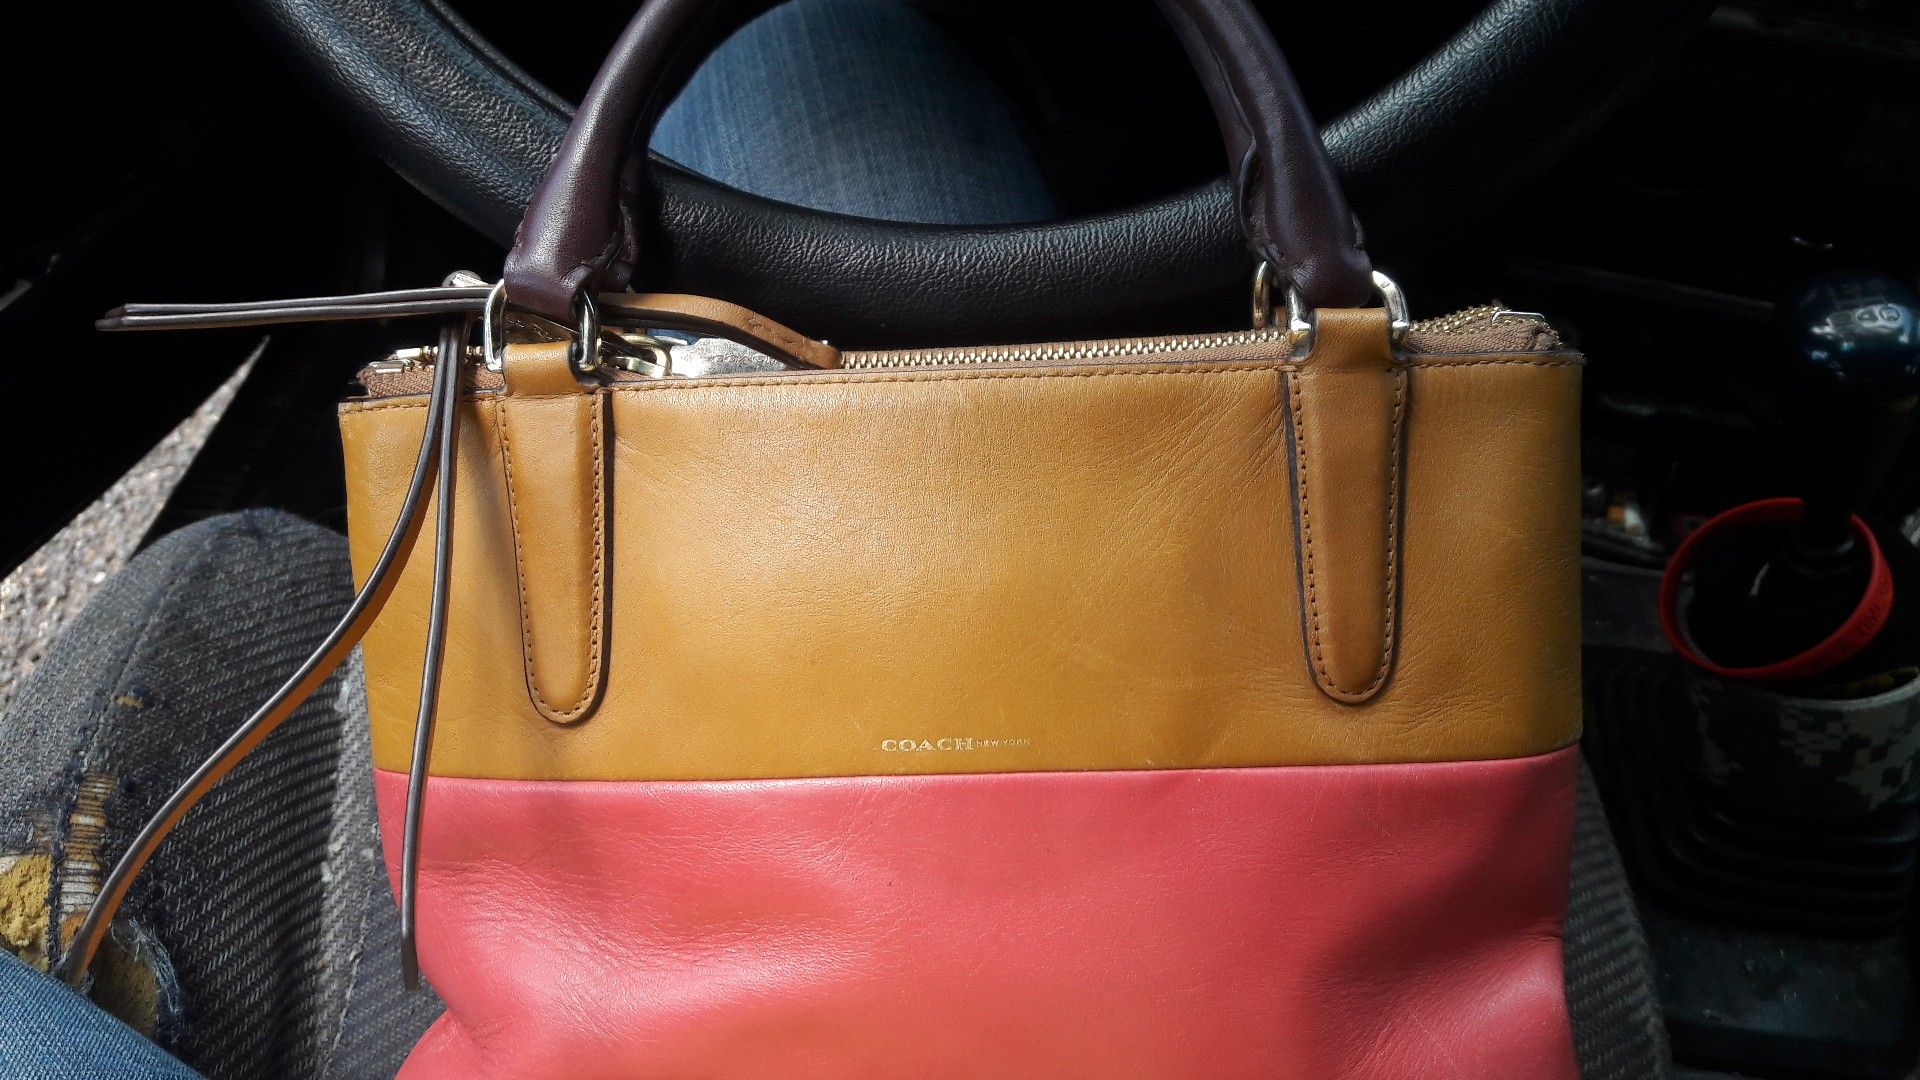 Mini coach satchel handbag